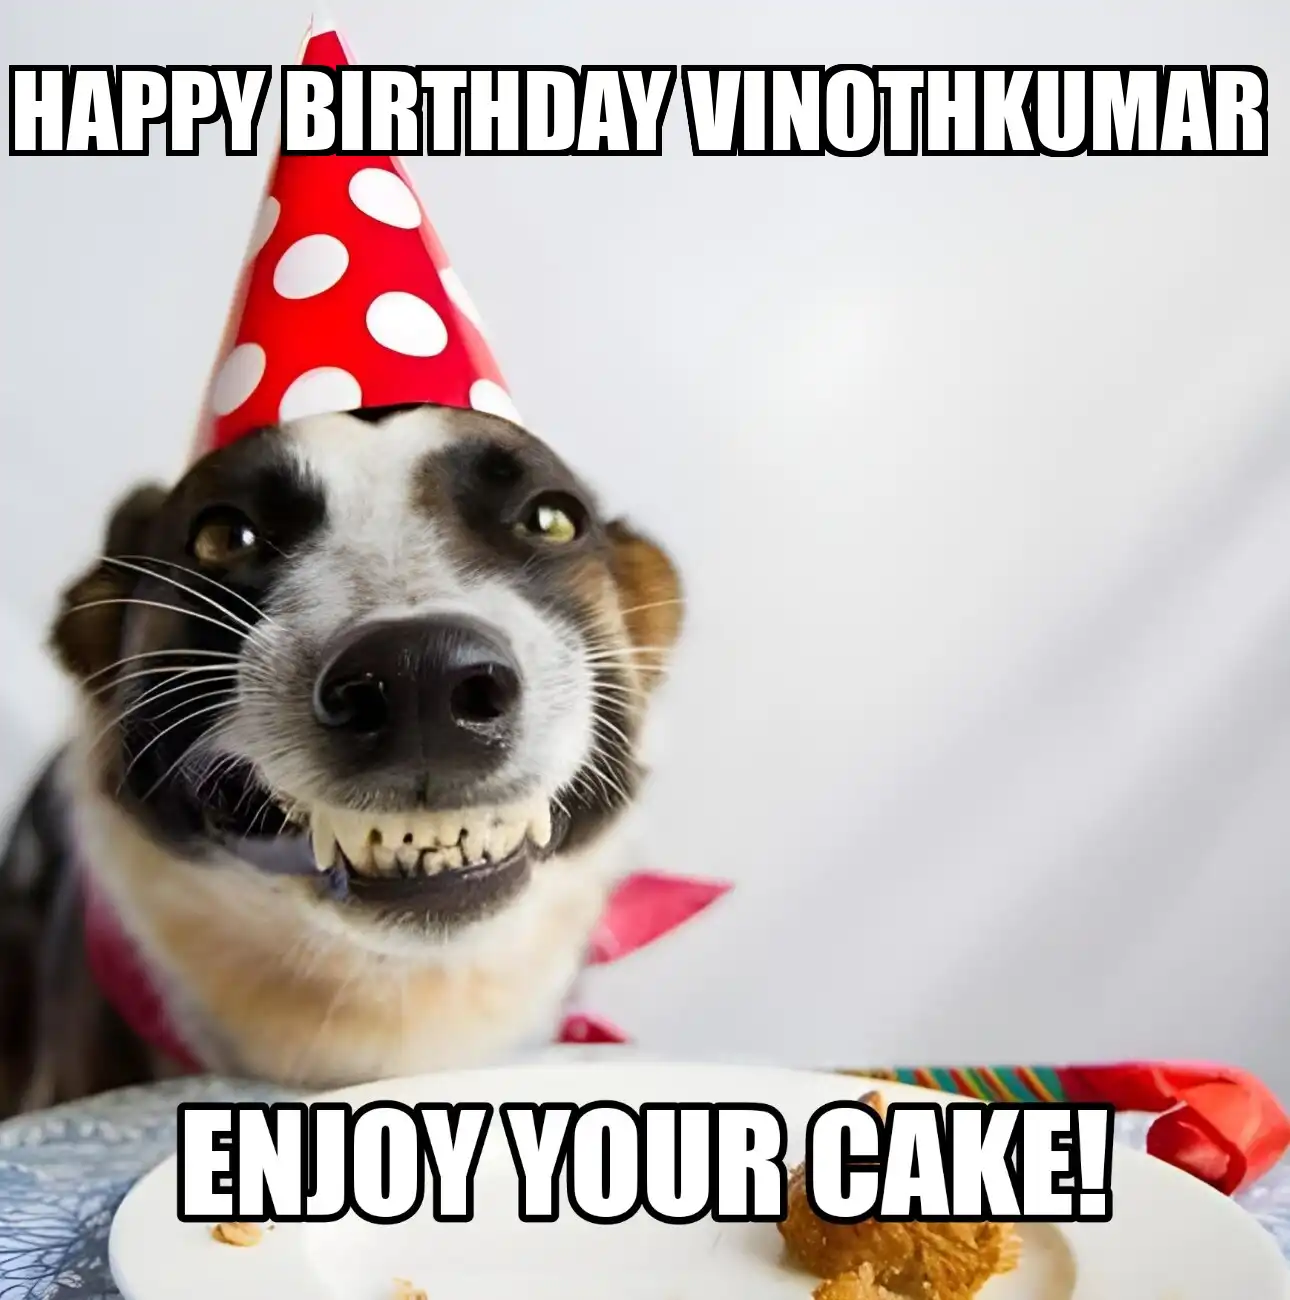 Happy Birthday Vinothkumar Enjoy Your Cake Dog Meme